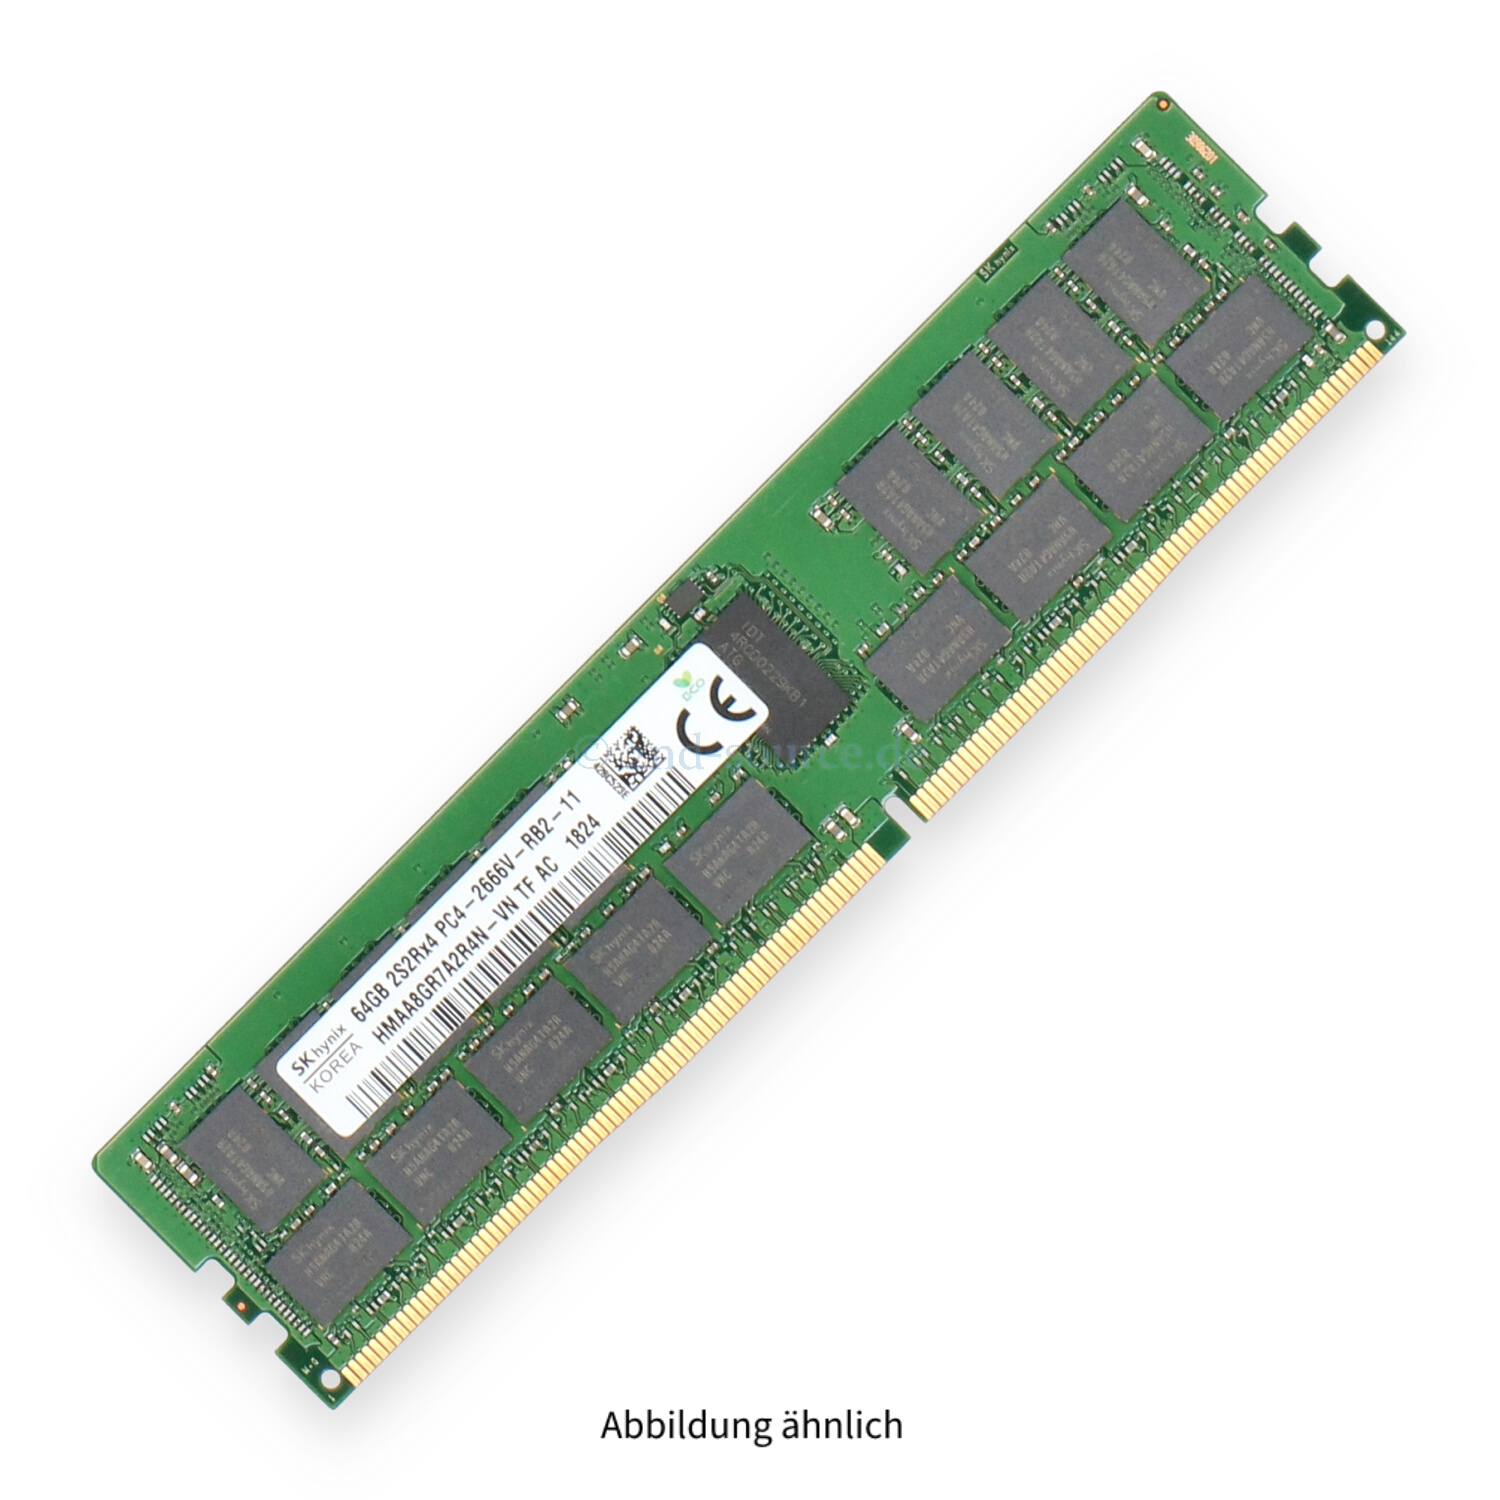 Hynix 64GB PC4-21300V-R DIMM Quad Rank x4 (DDR4-2666) Registered ECC HMAA8GR7A2R4N-VN